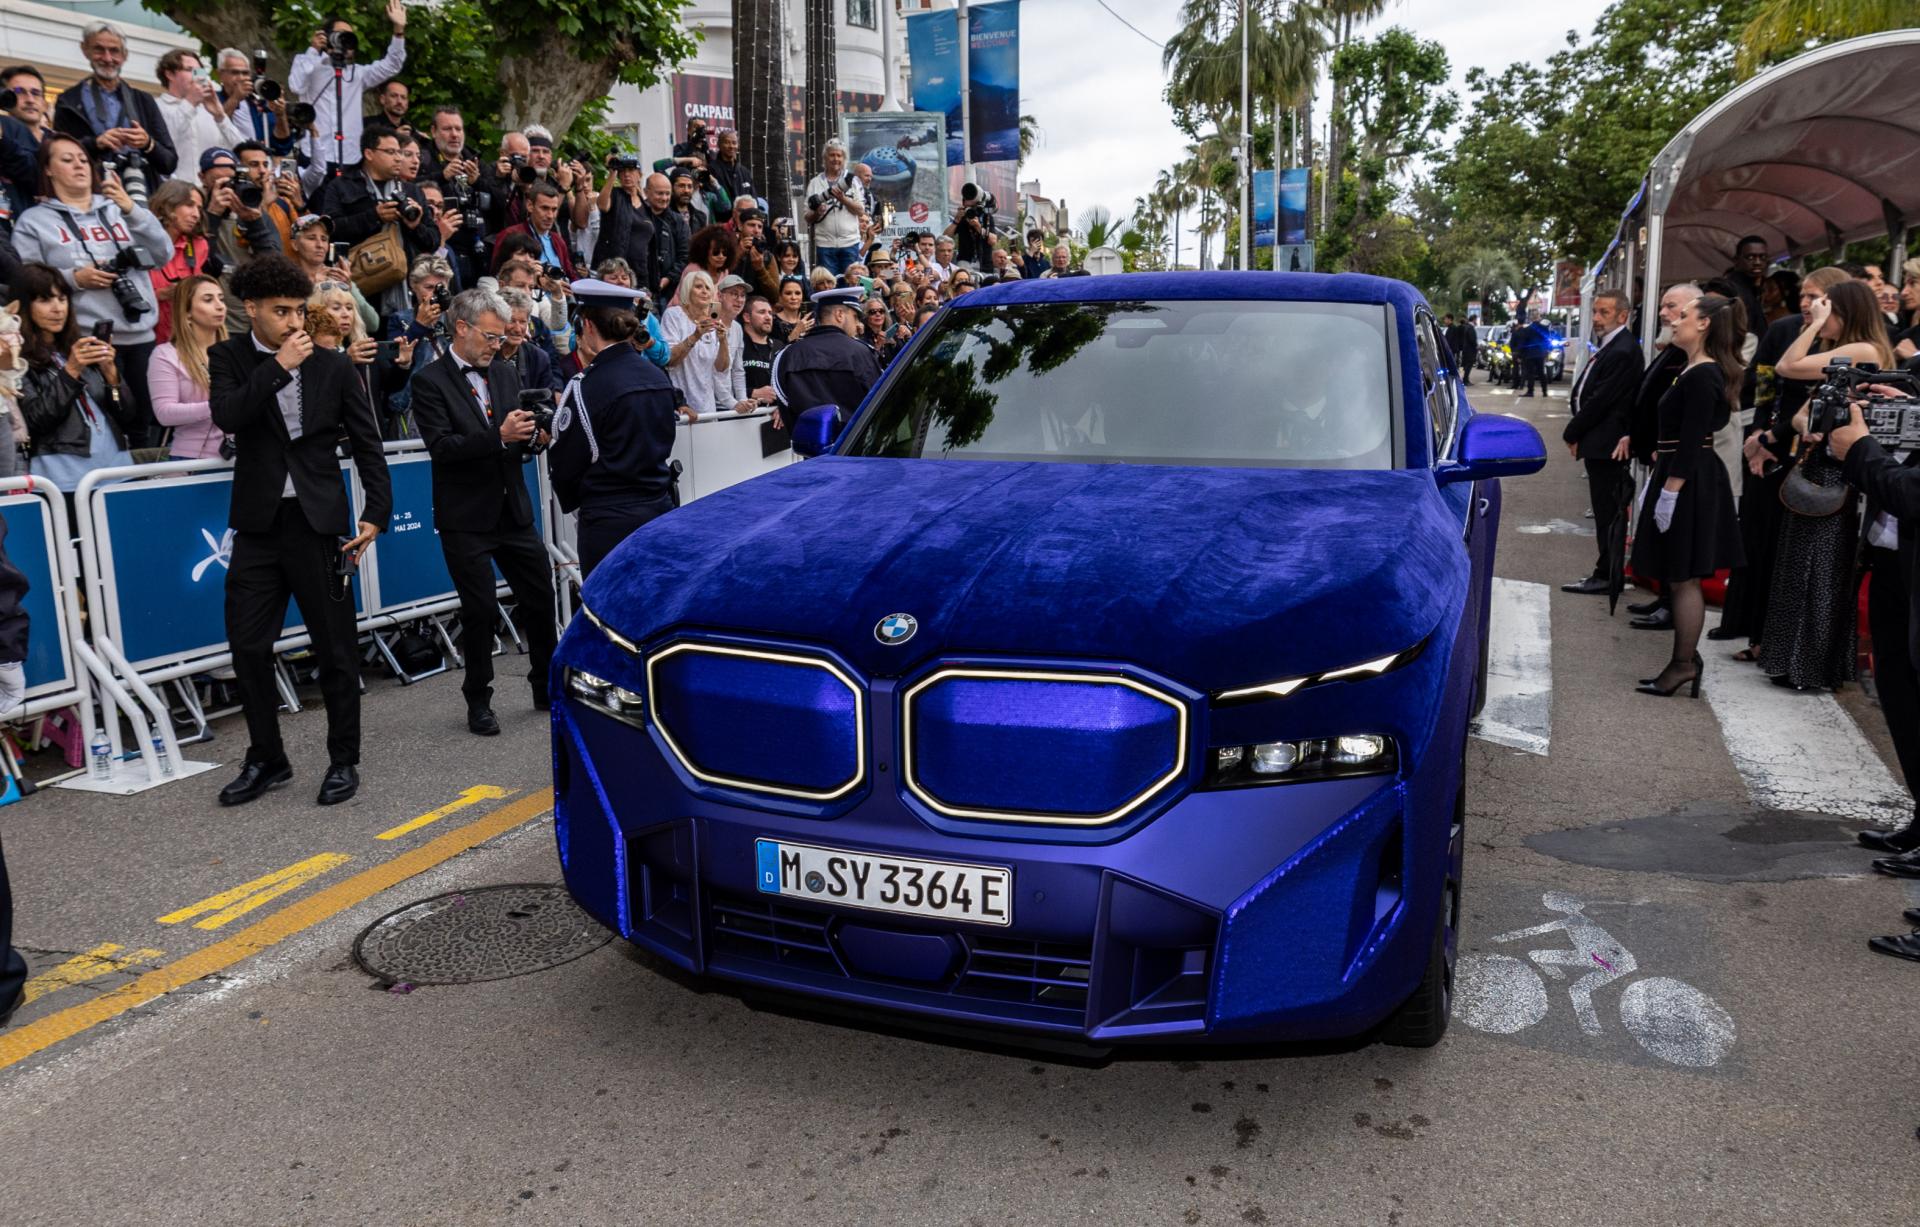 Šialenosť od BMW: Veľké kontroverzné SUV obliekli do zamatu, trblietok a flitrov